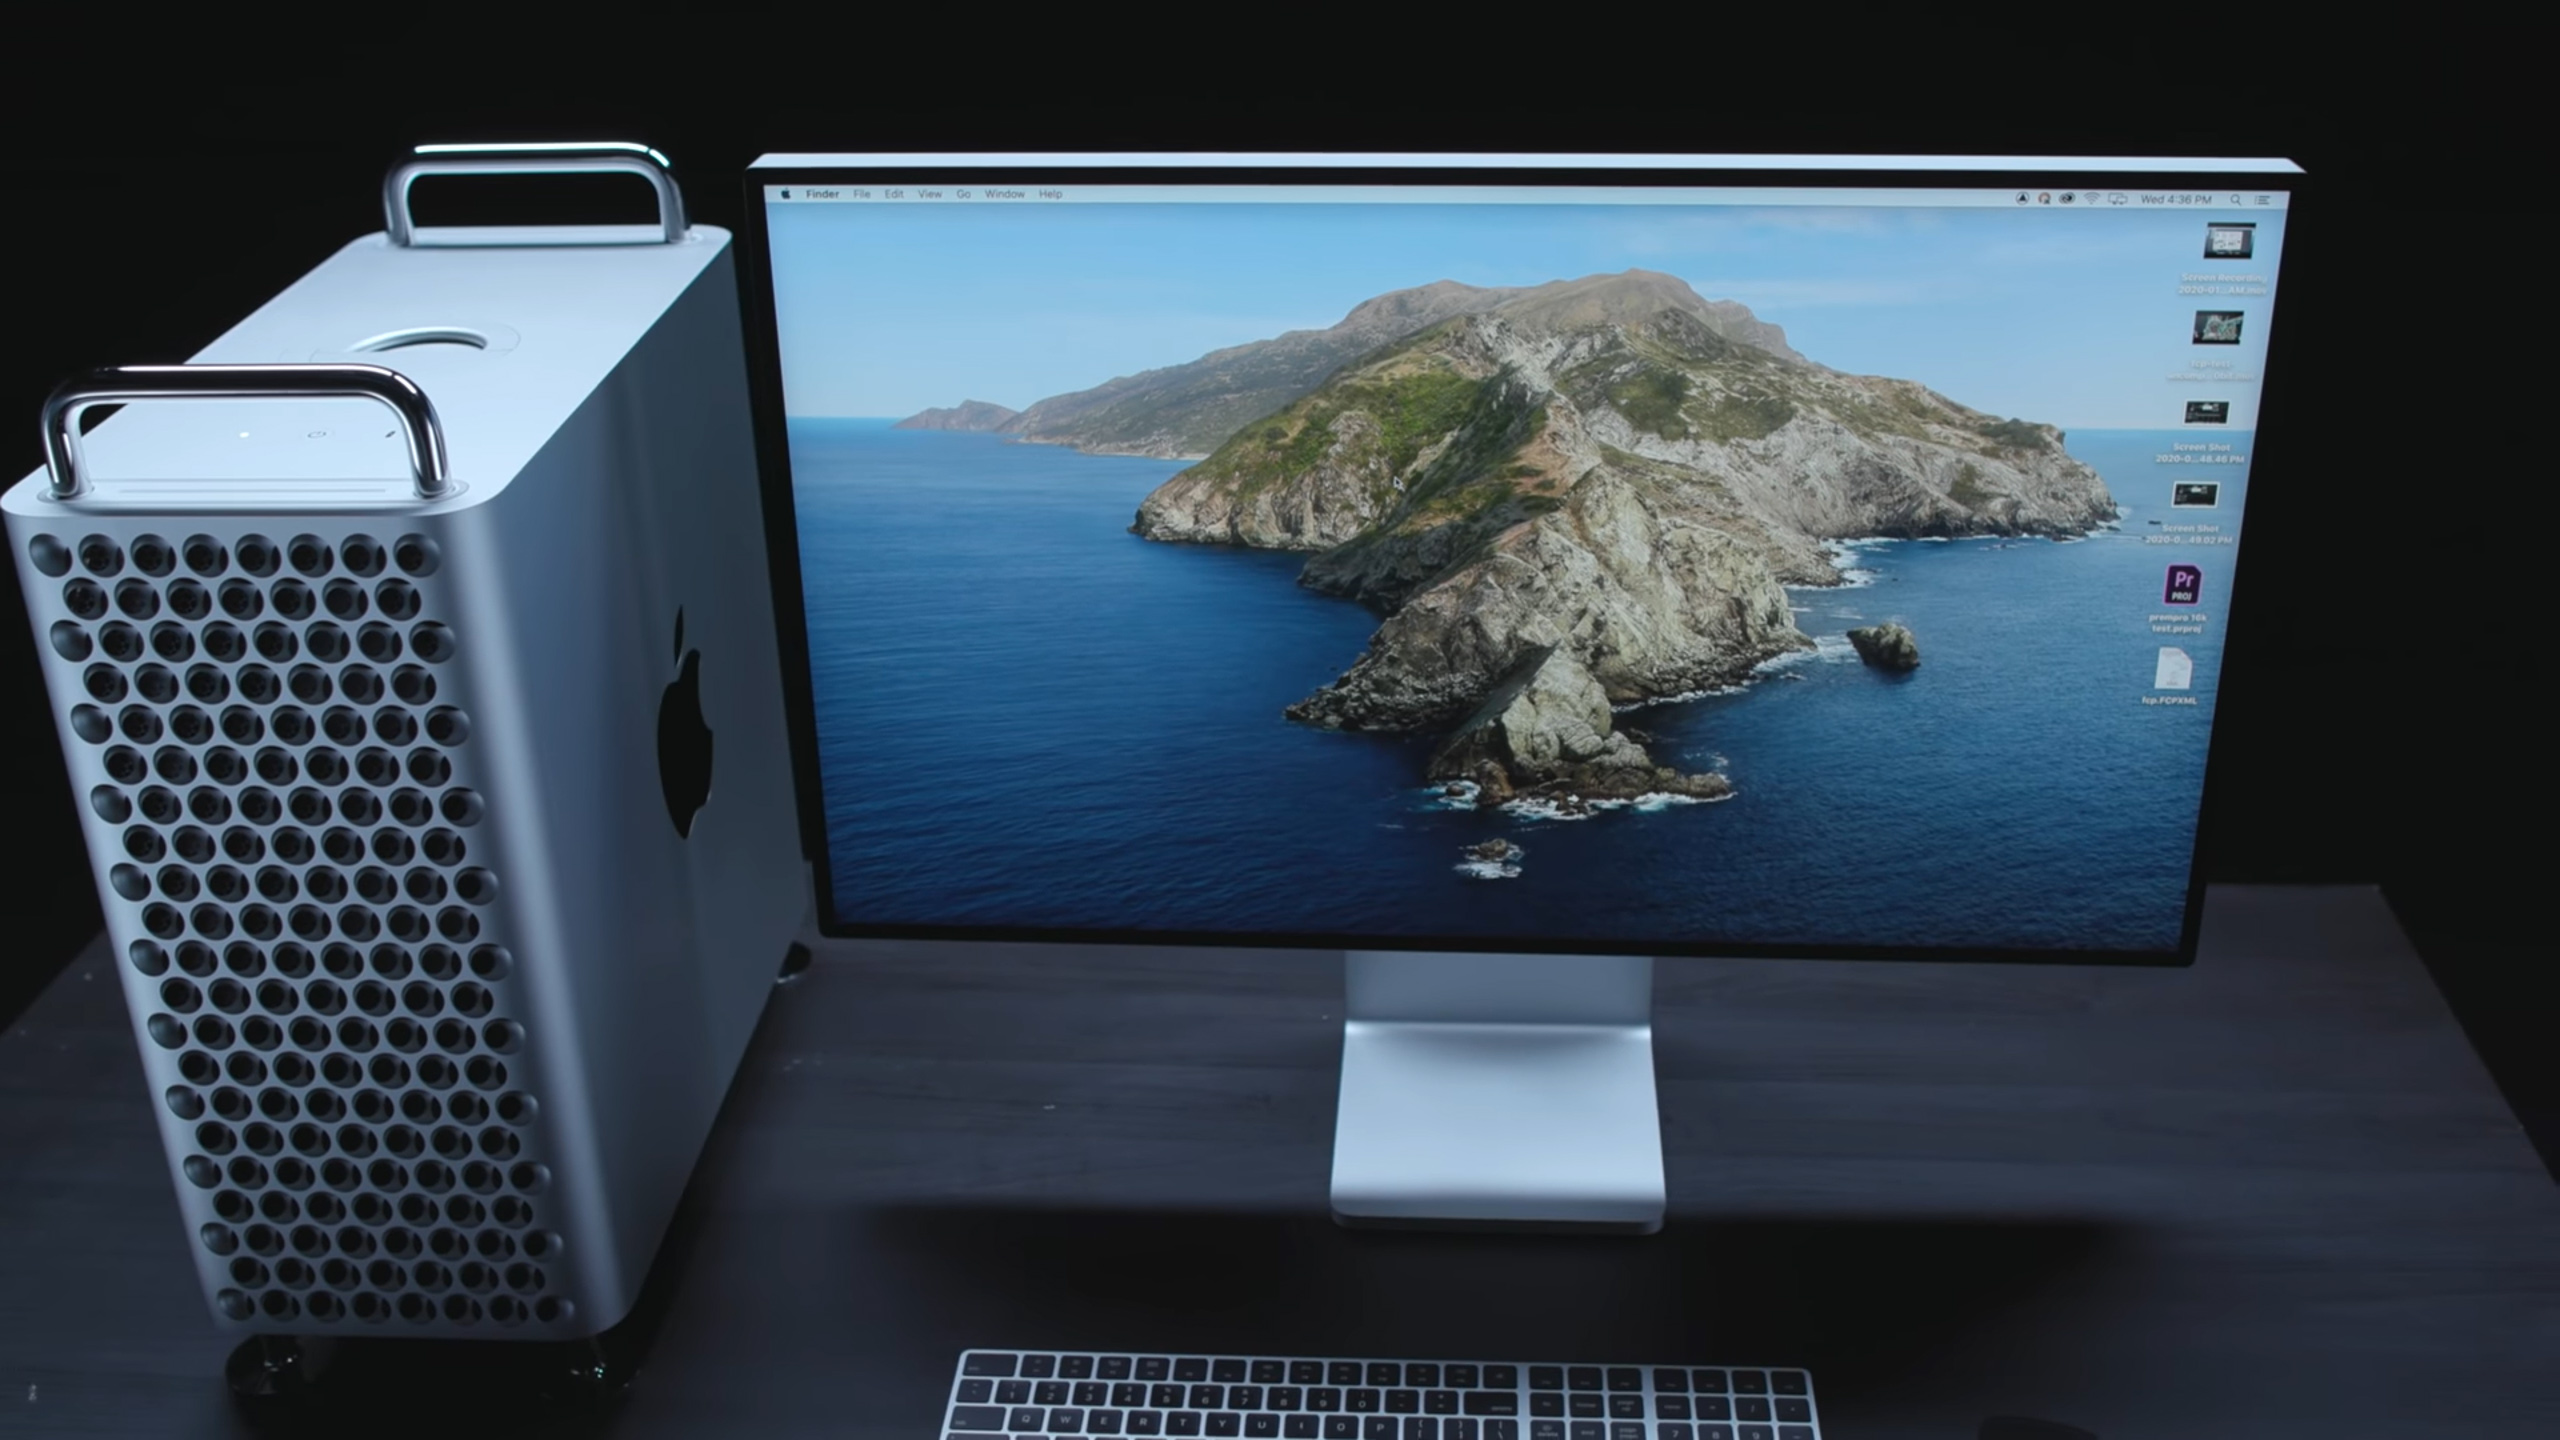 Đánh giá Mac Pro 2019 và Pro Display XDR cùng các chuyên gia sáng tạo The Verge